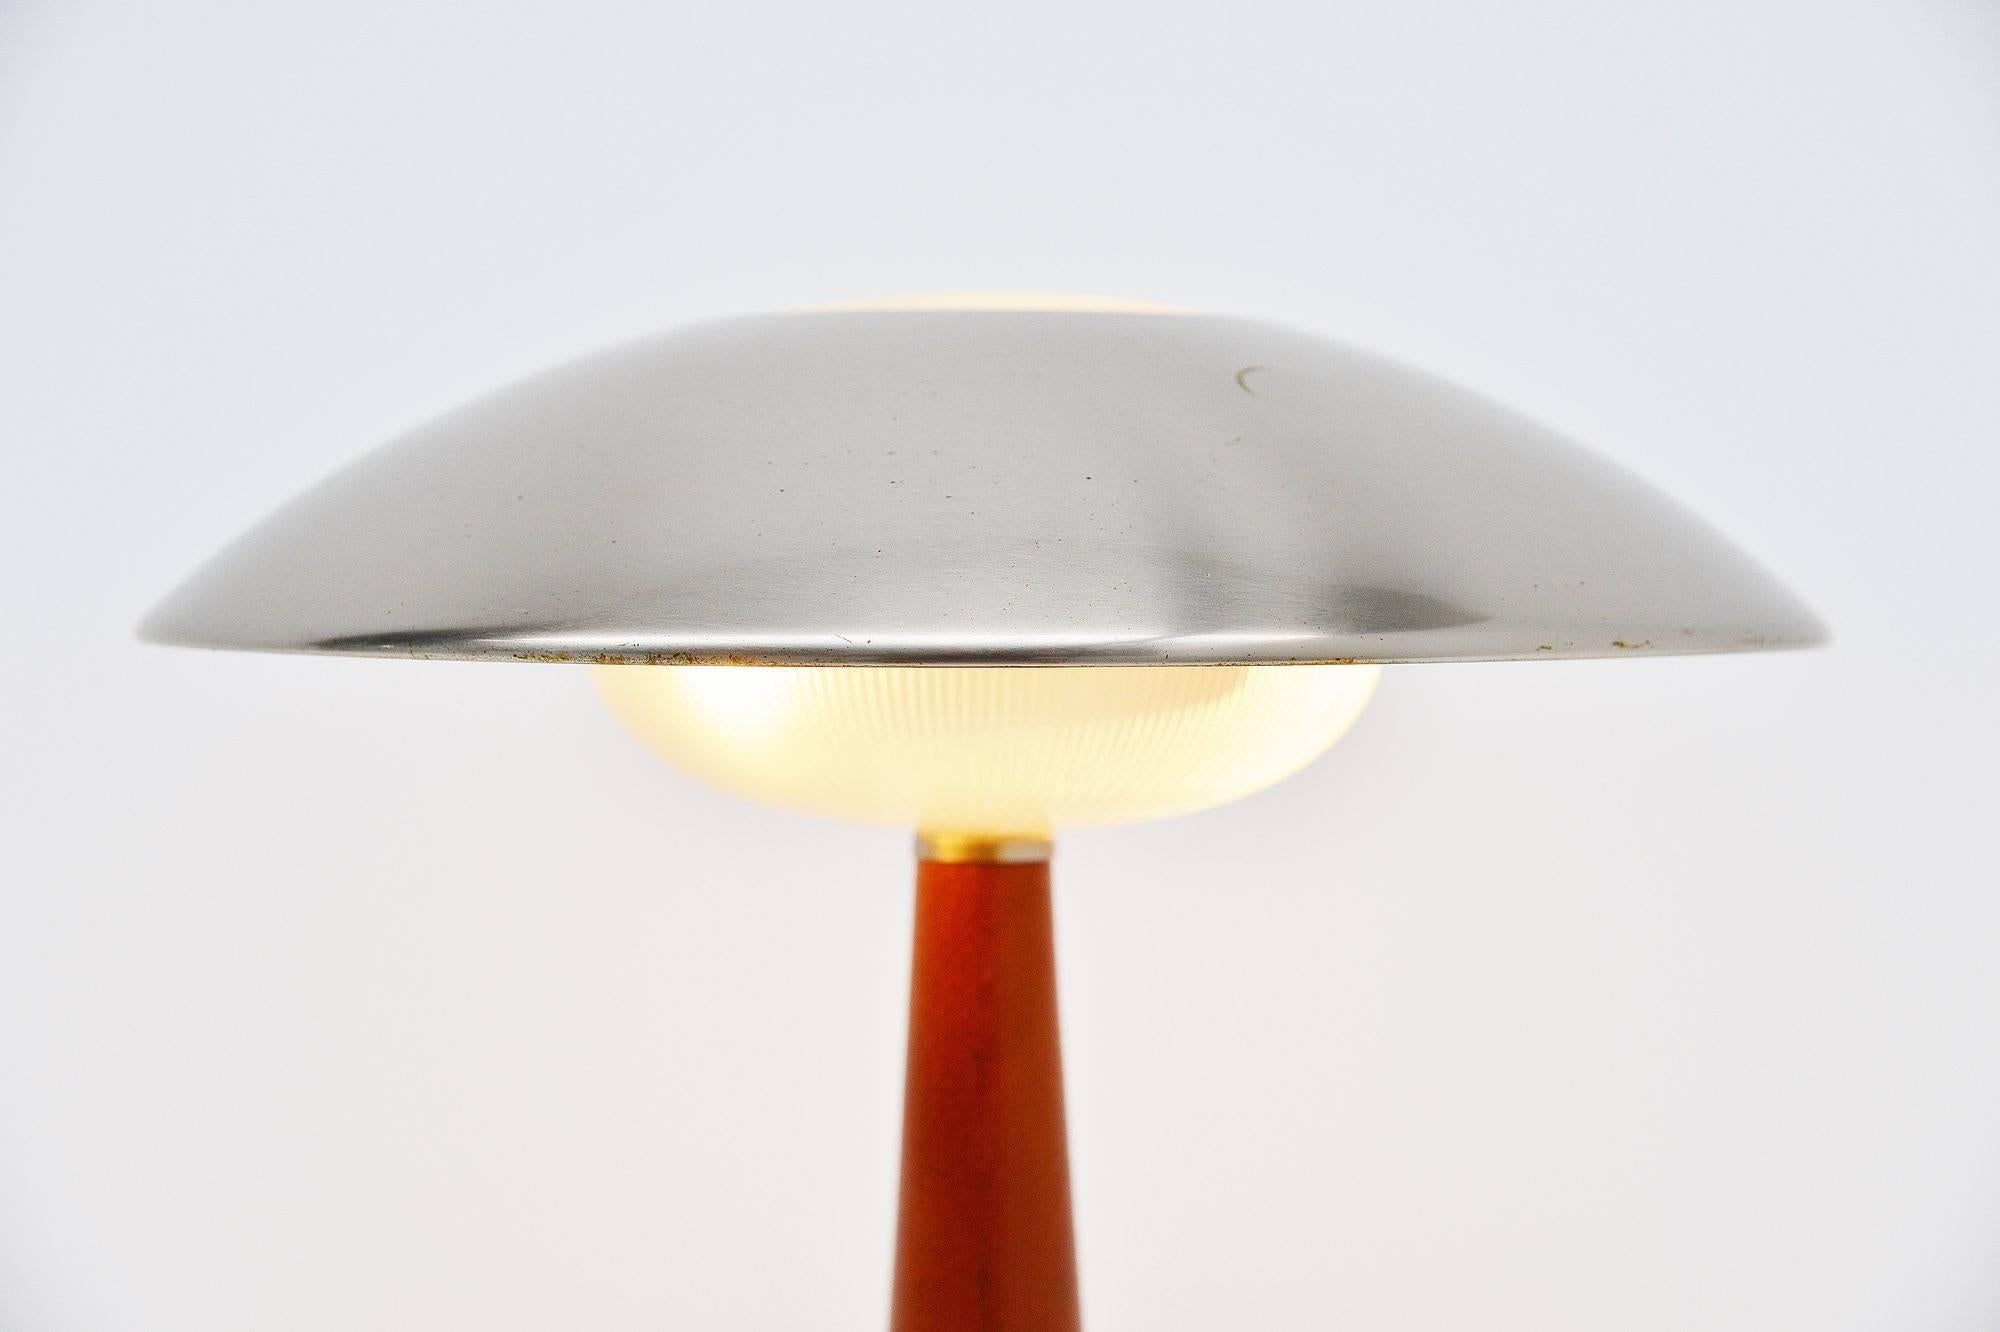 Très belle lampe de table modèle 8041 conçue et fabriquée par Stilnovo, Italie 1960. Il s'agit d'une très belle lampe pendante de table de forme moderniste avec un abat-jour nickelé, un diffuseur en verre et une base recouverte de cuir cognac. Il